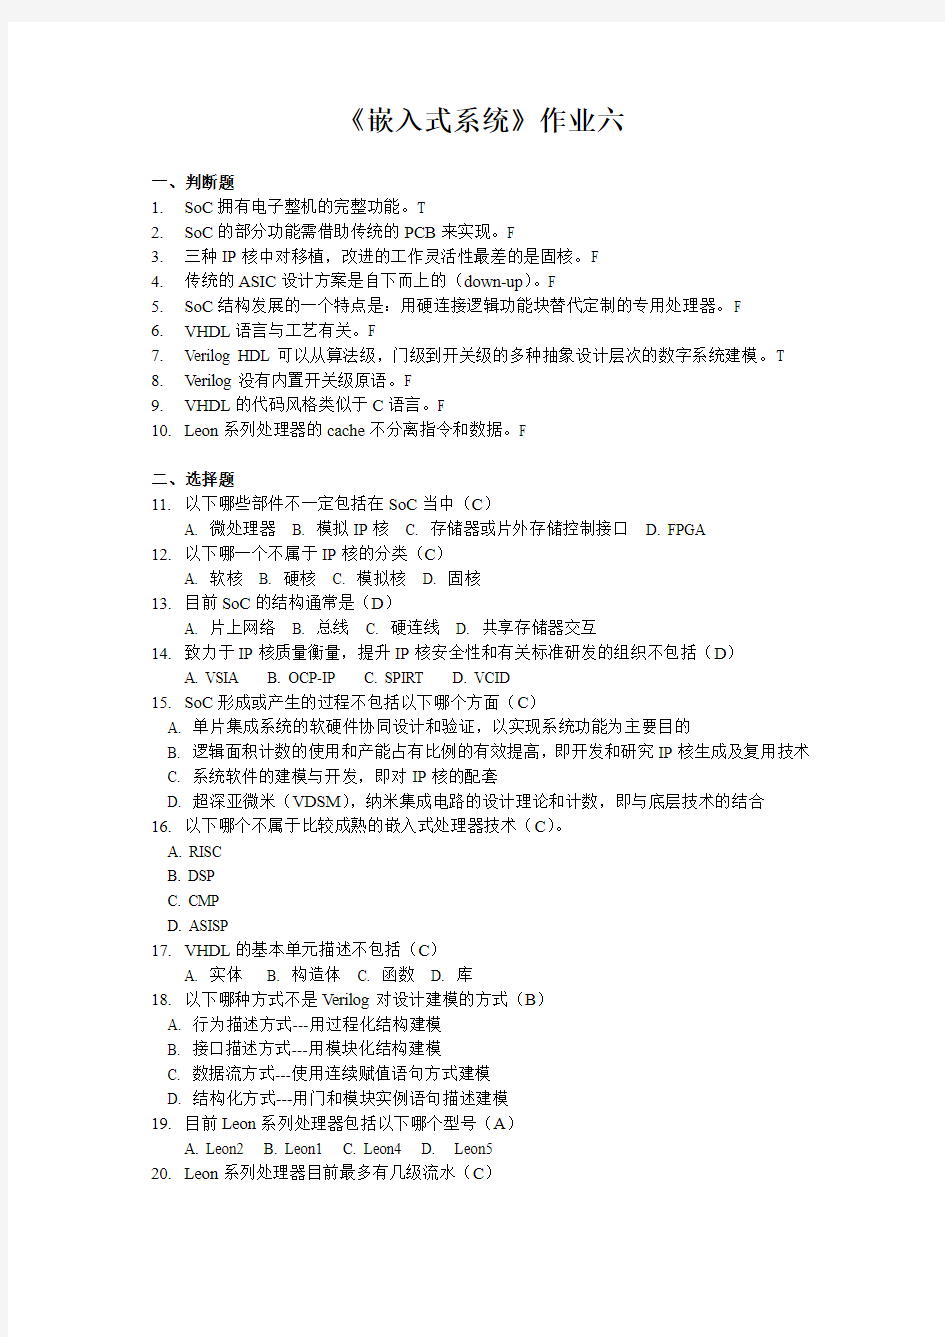 2012浙江大学嵌入式系统离线作业答案第6次